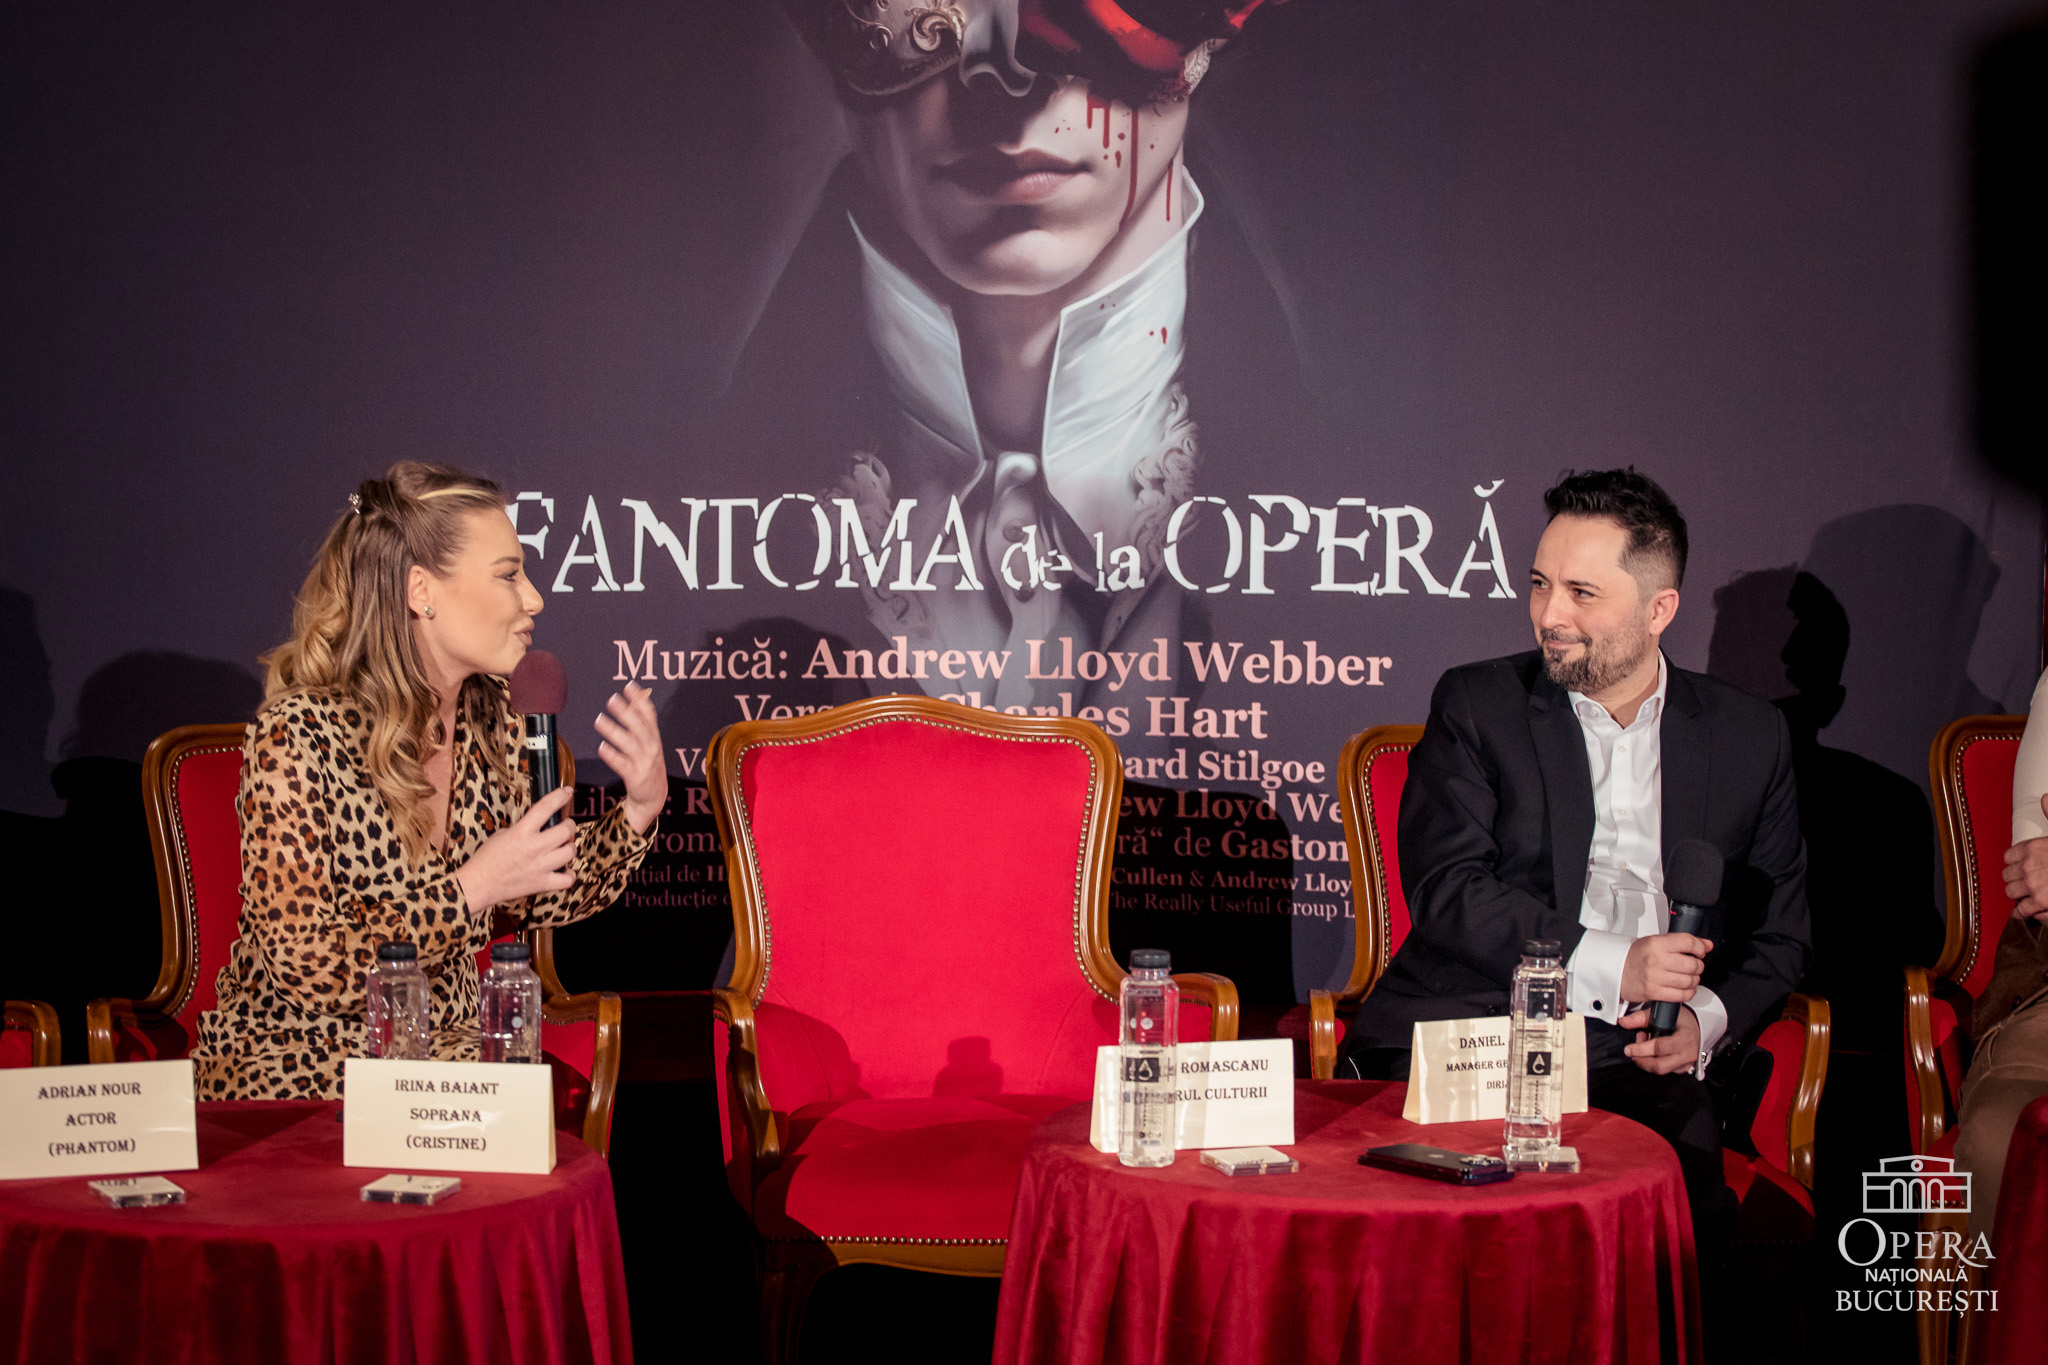 Fantoma de la Operă - sold out in cateva ore toate cele 8 spectacole din aprilie si mai